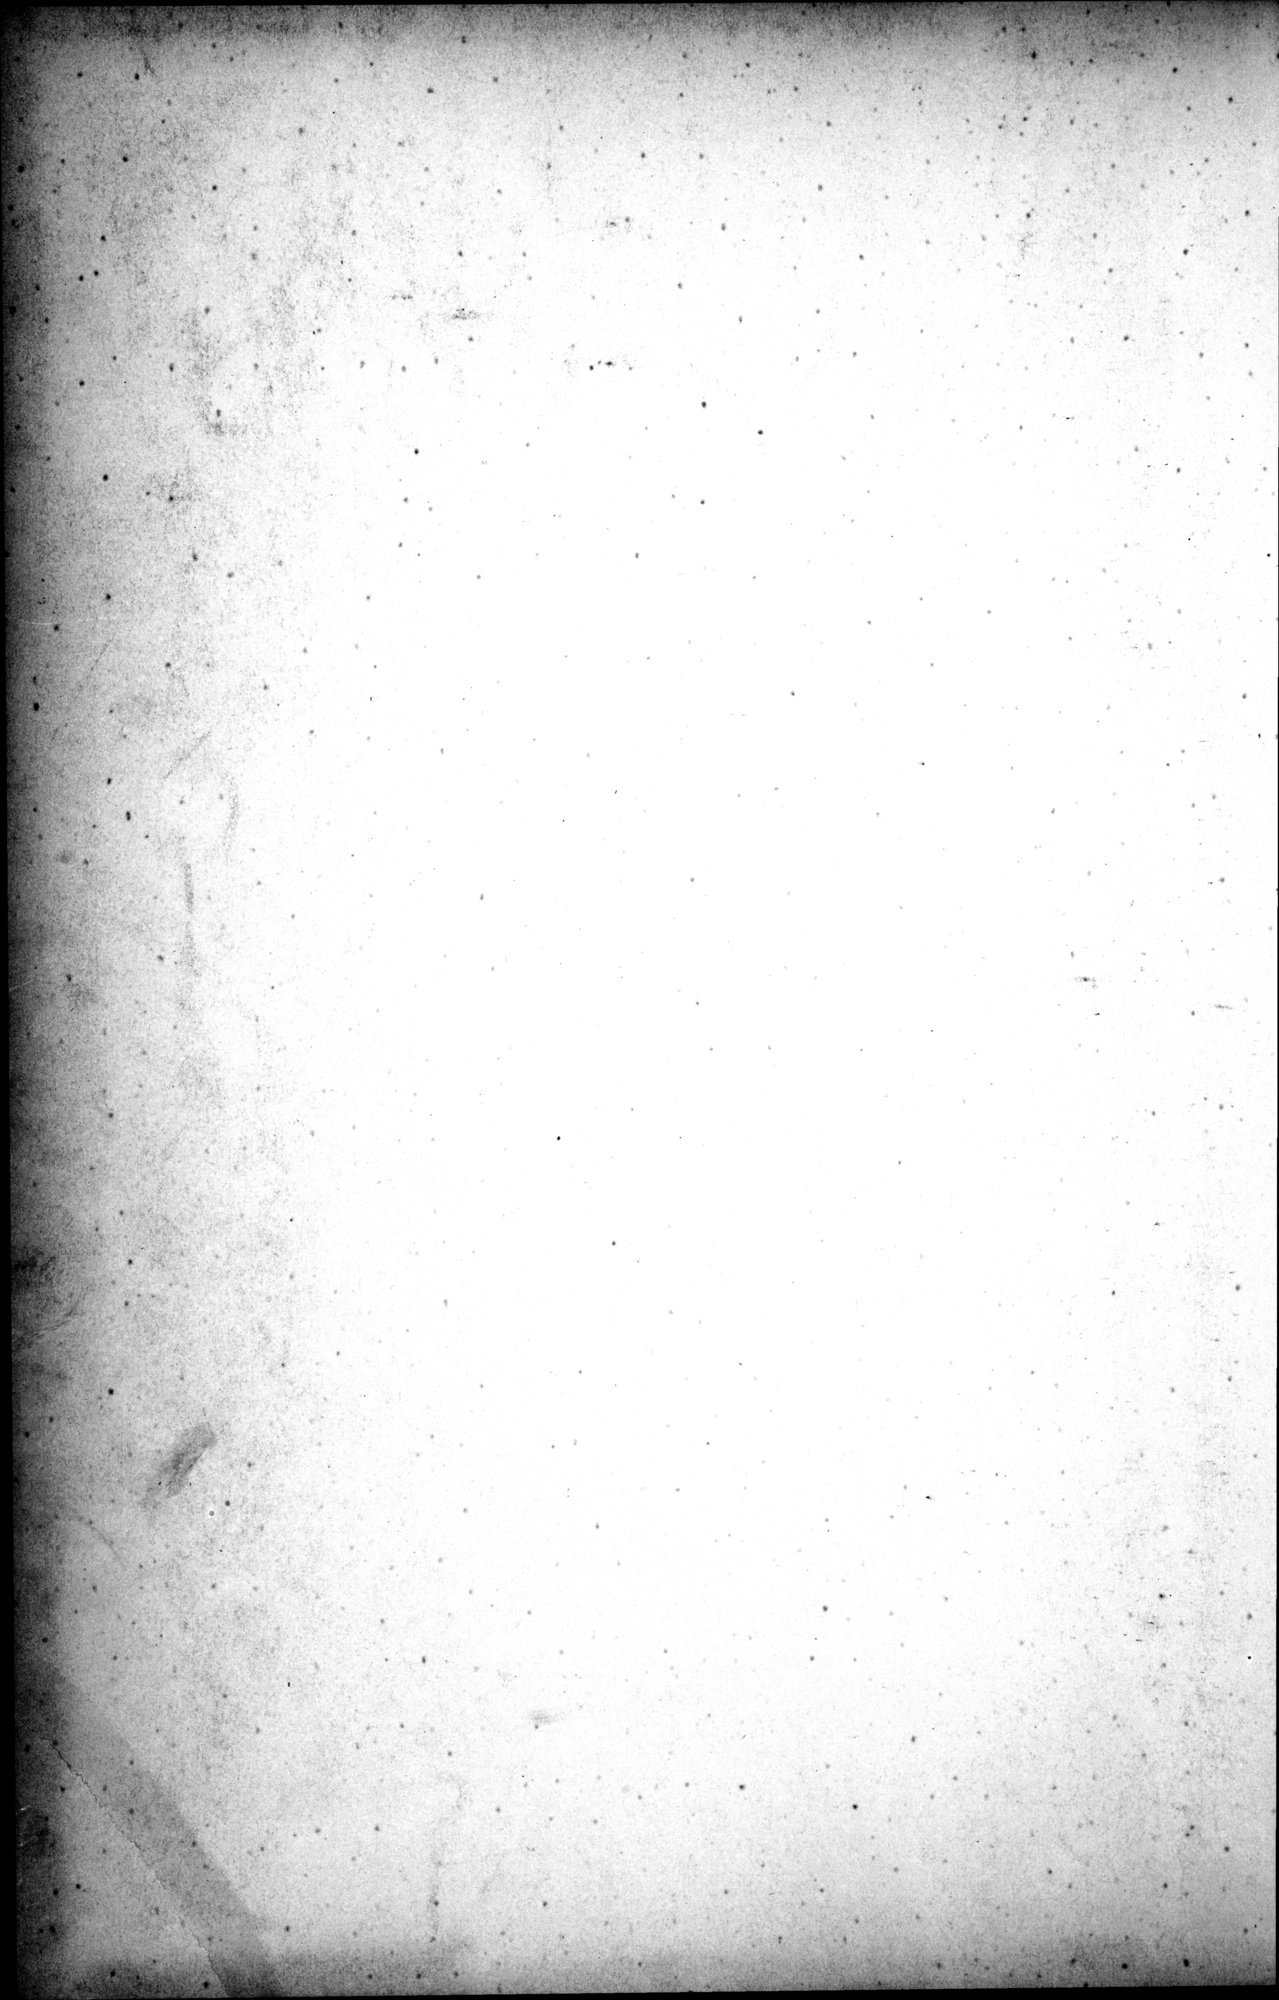 西域考古図譜 : vol.2 / Page 321 (Grayscale High Resolution Image)